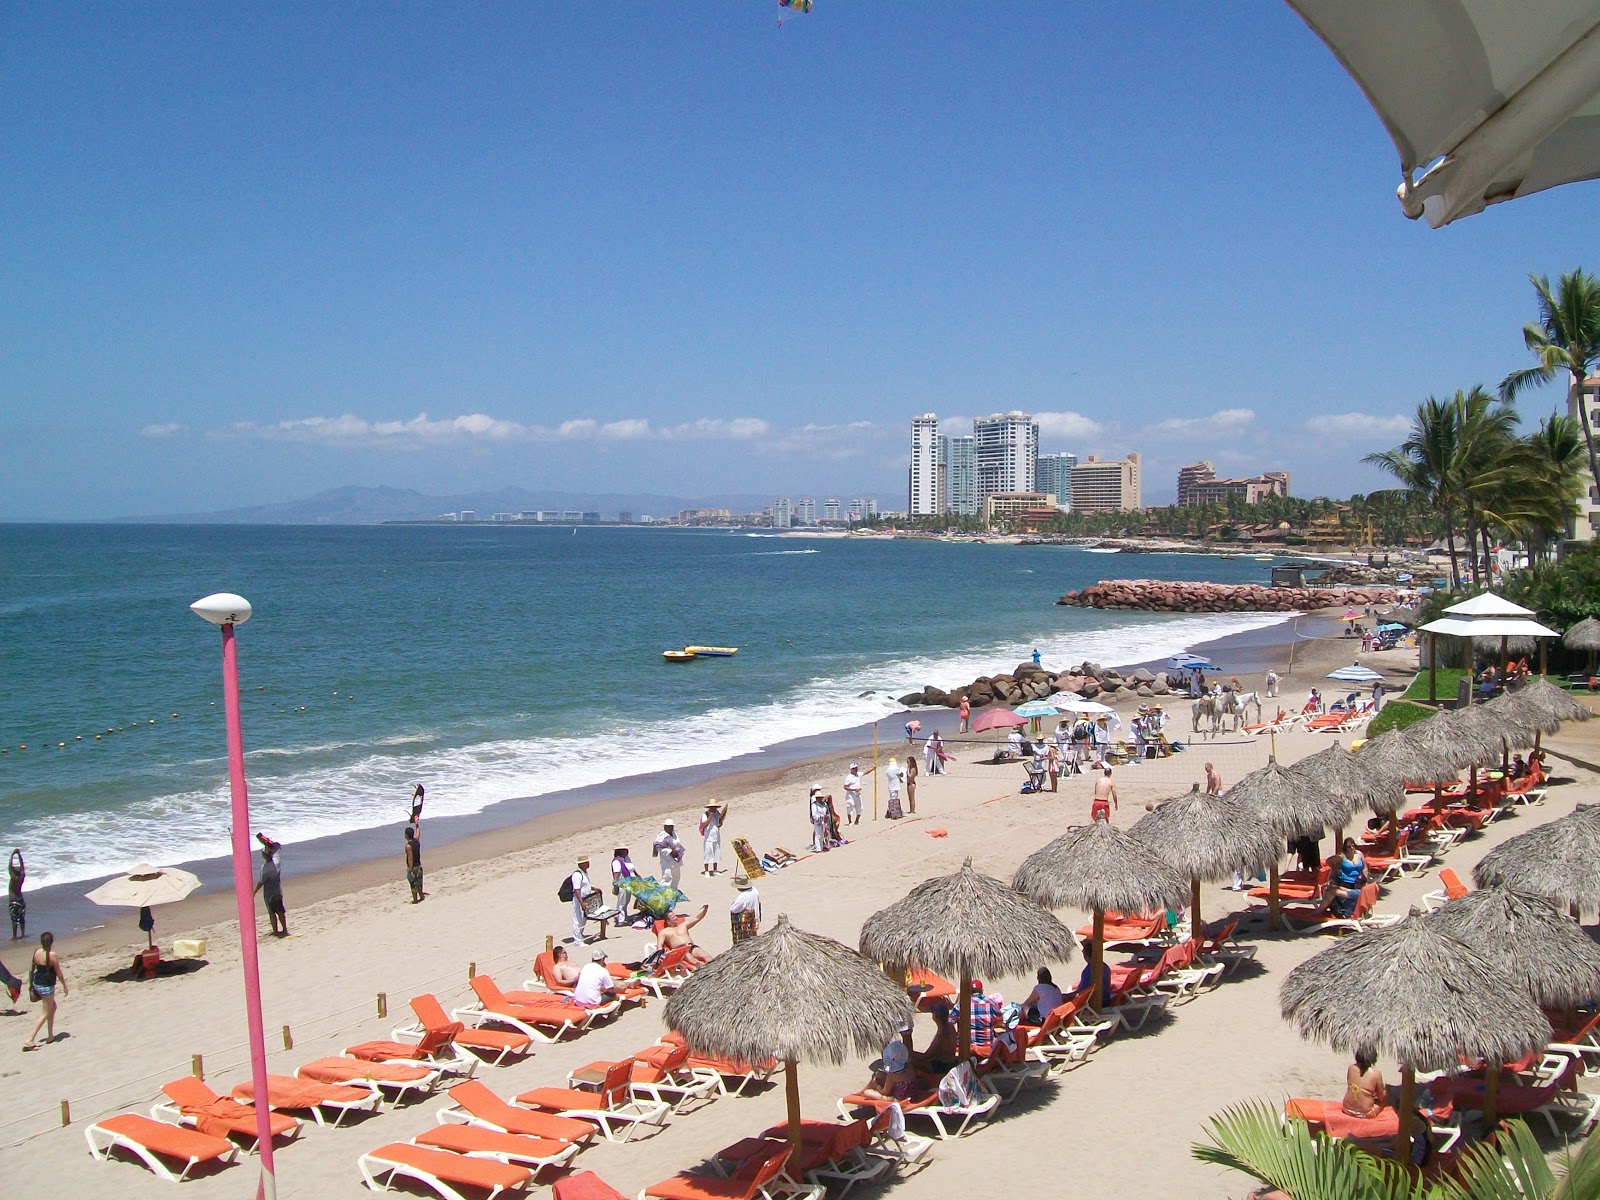 Las Glorias beach'in fotoğrafı geniş plaj ile birlikte